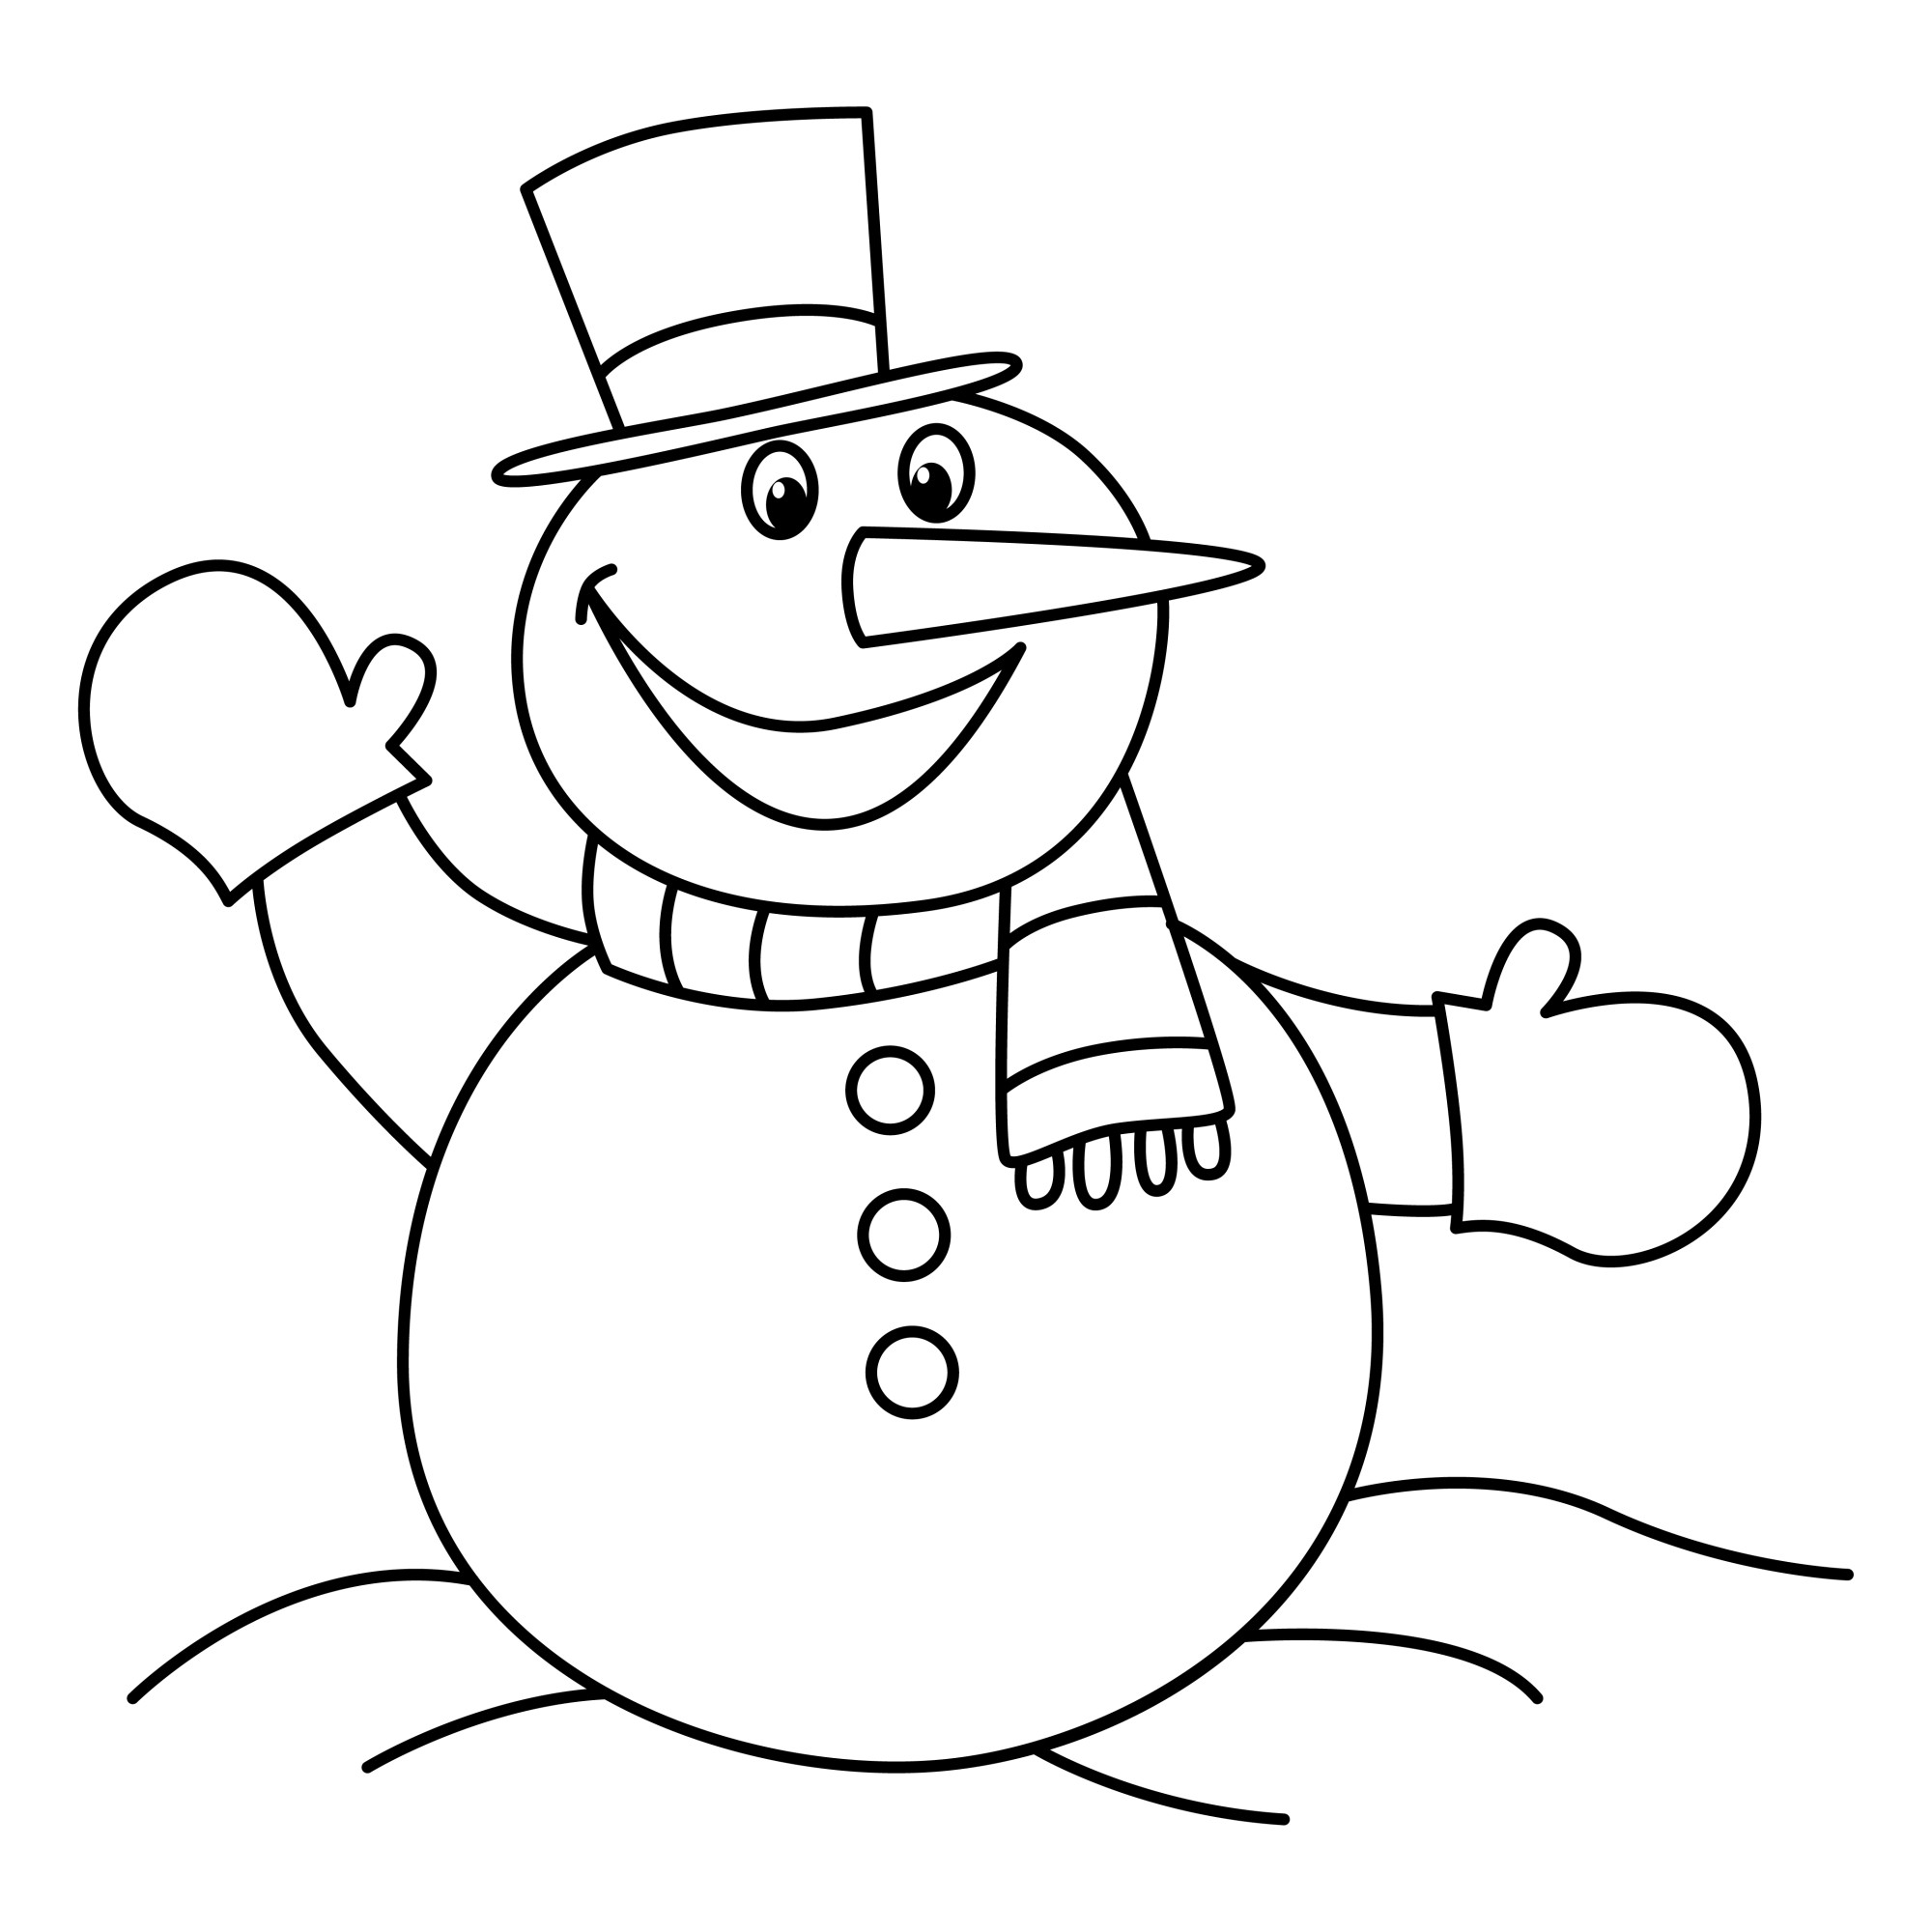 Раскраска для детей: мультяшный снеговик в варежках машет рукой